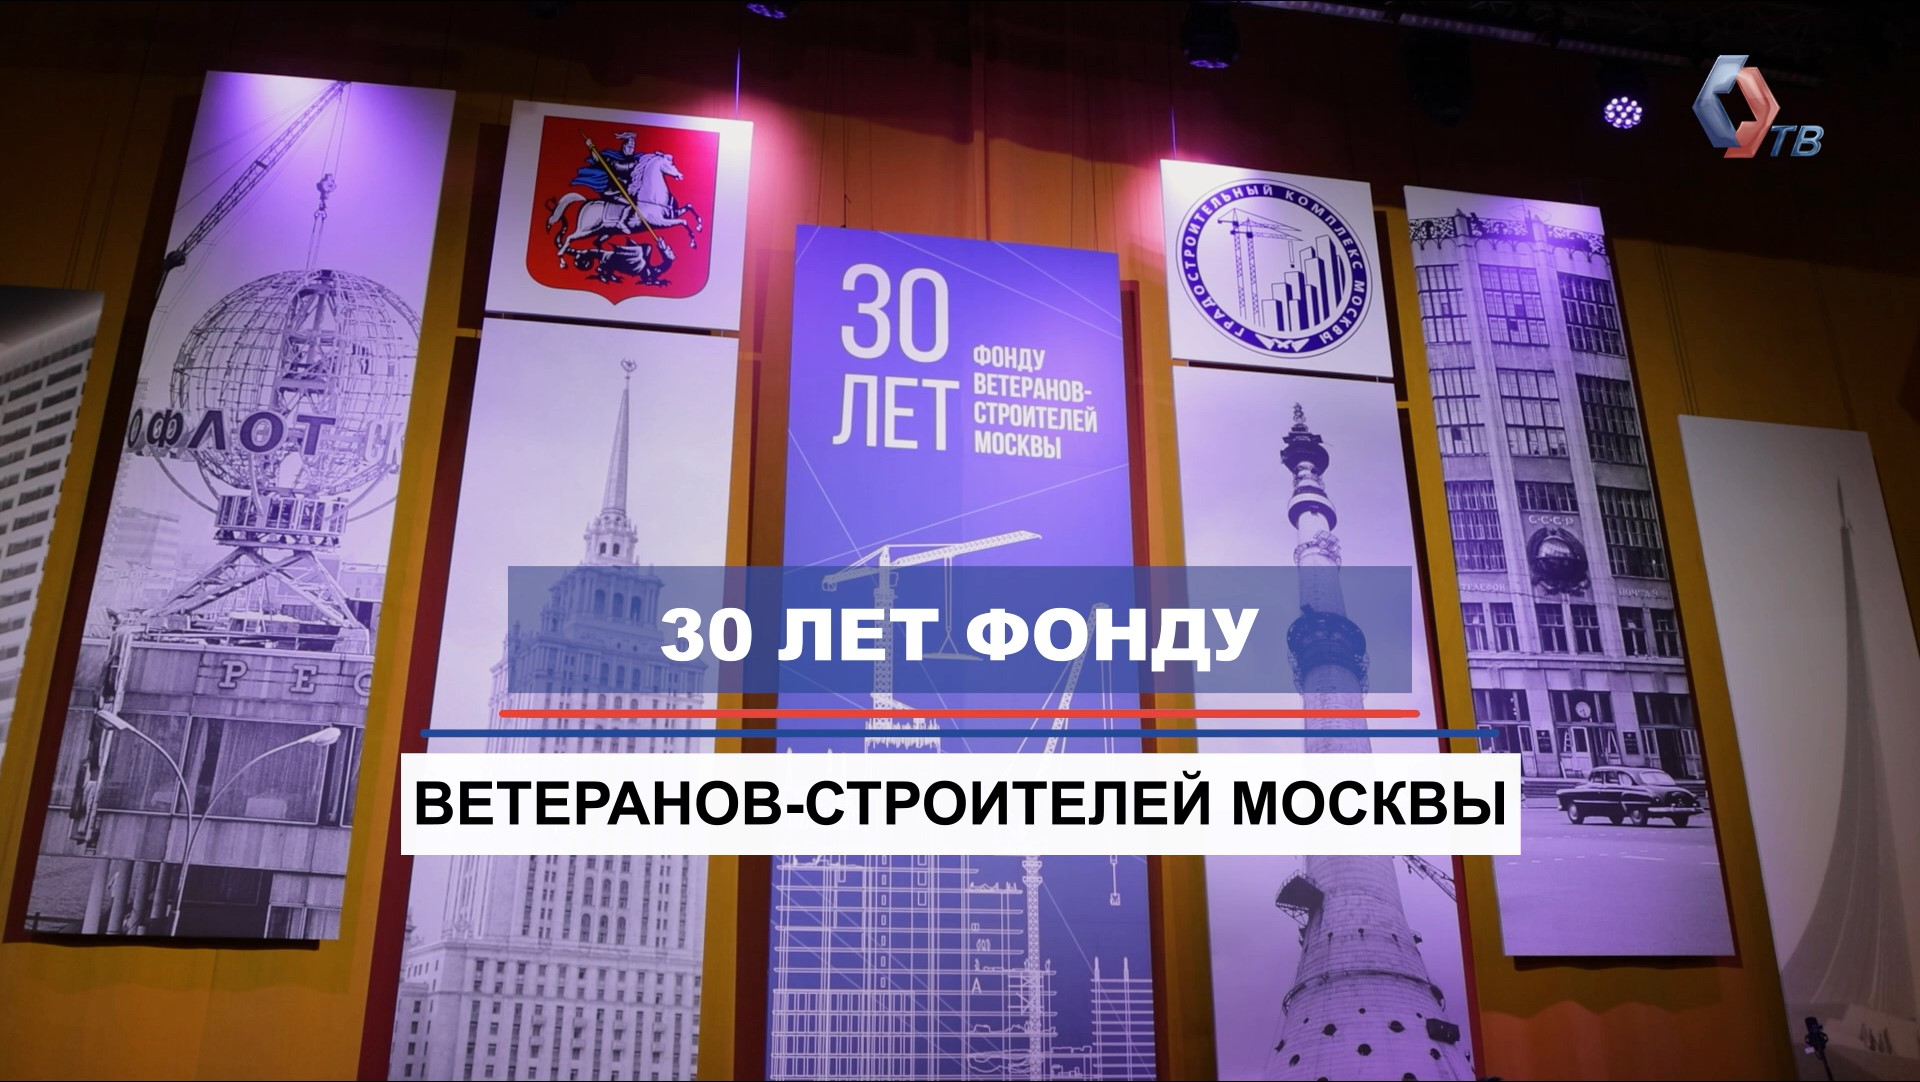 30 лет Фонду ветеранов-строителей Москвы! Как мы поддерживаем ветеранов отрасли